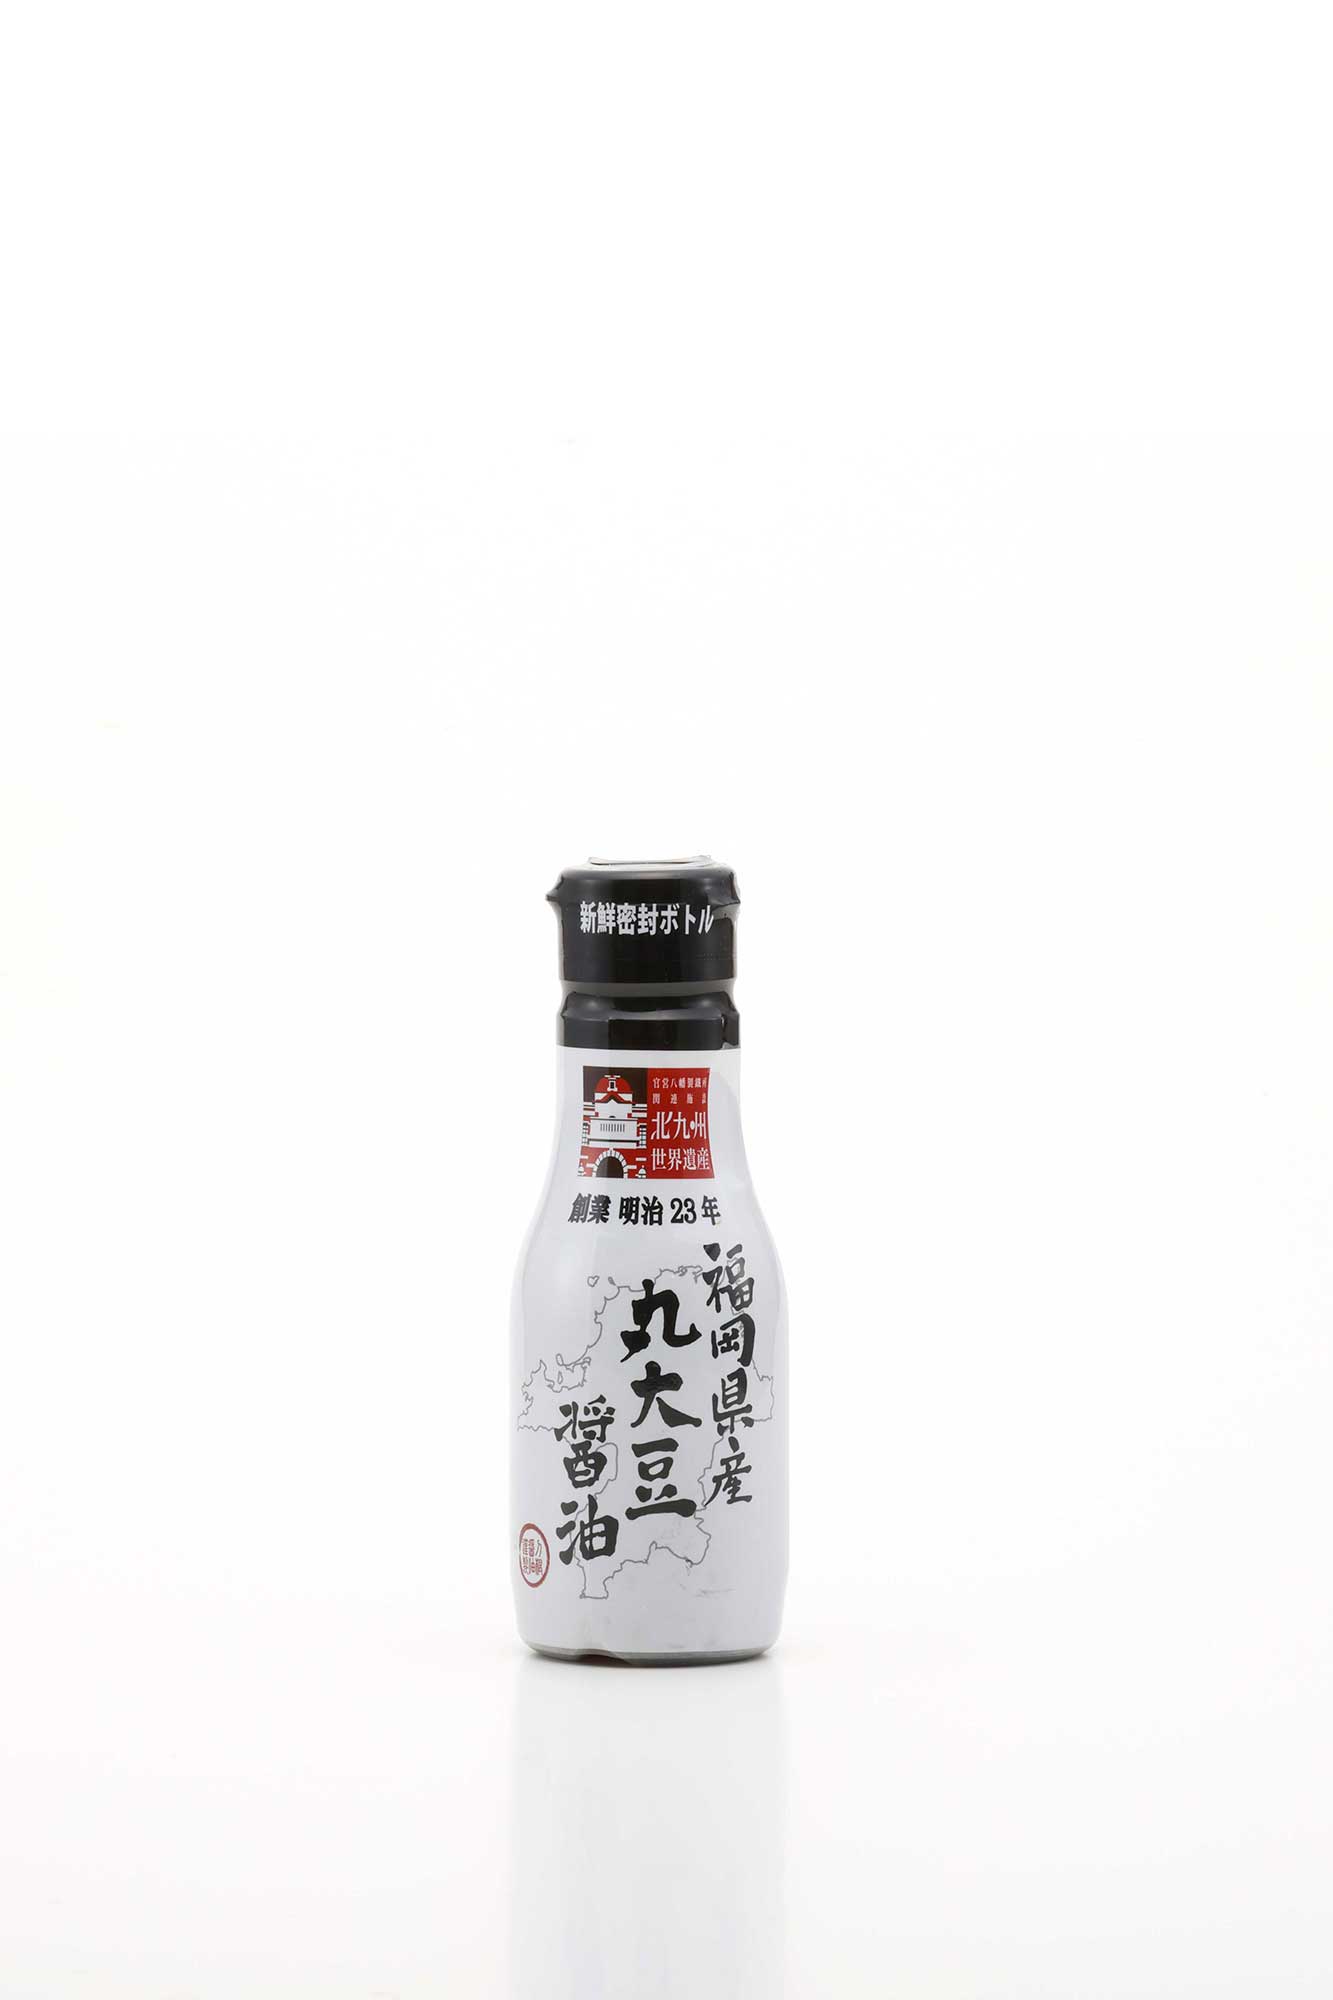 丸大豆醤油200mℓ新鮮密封ボトル